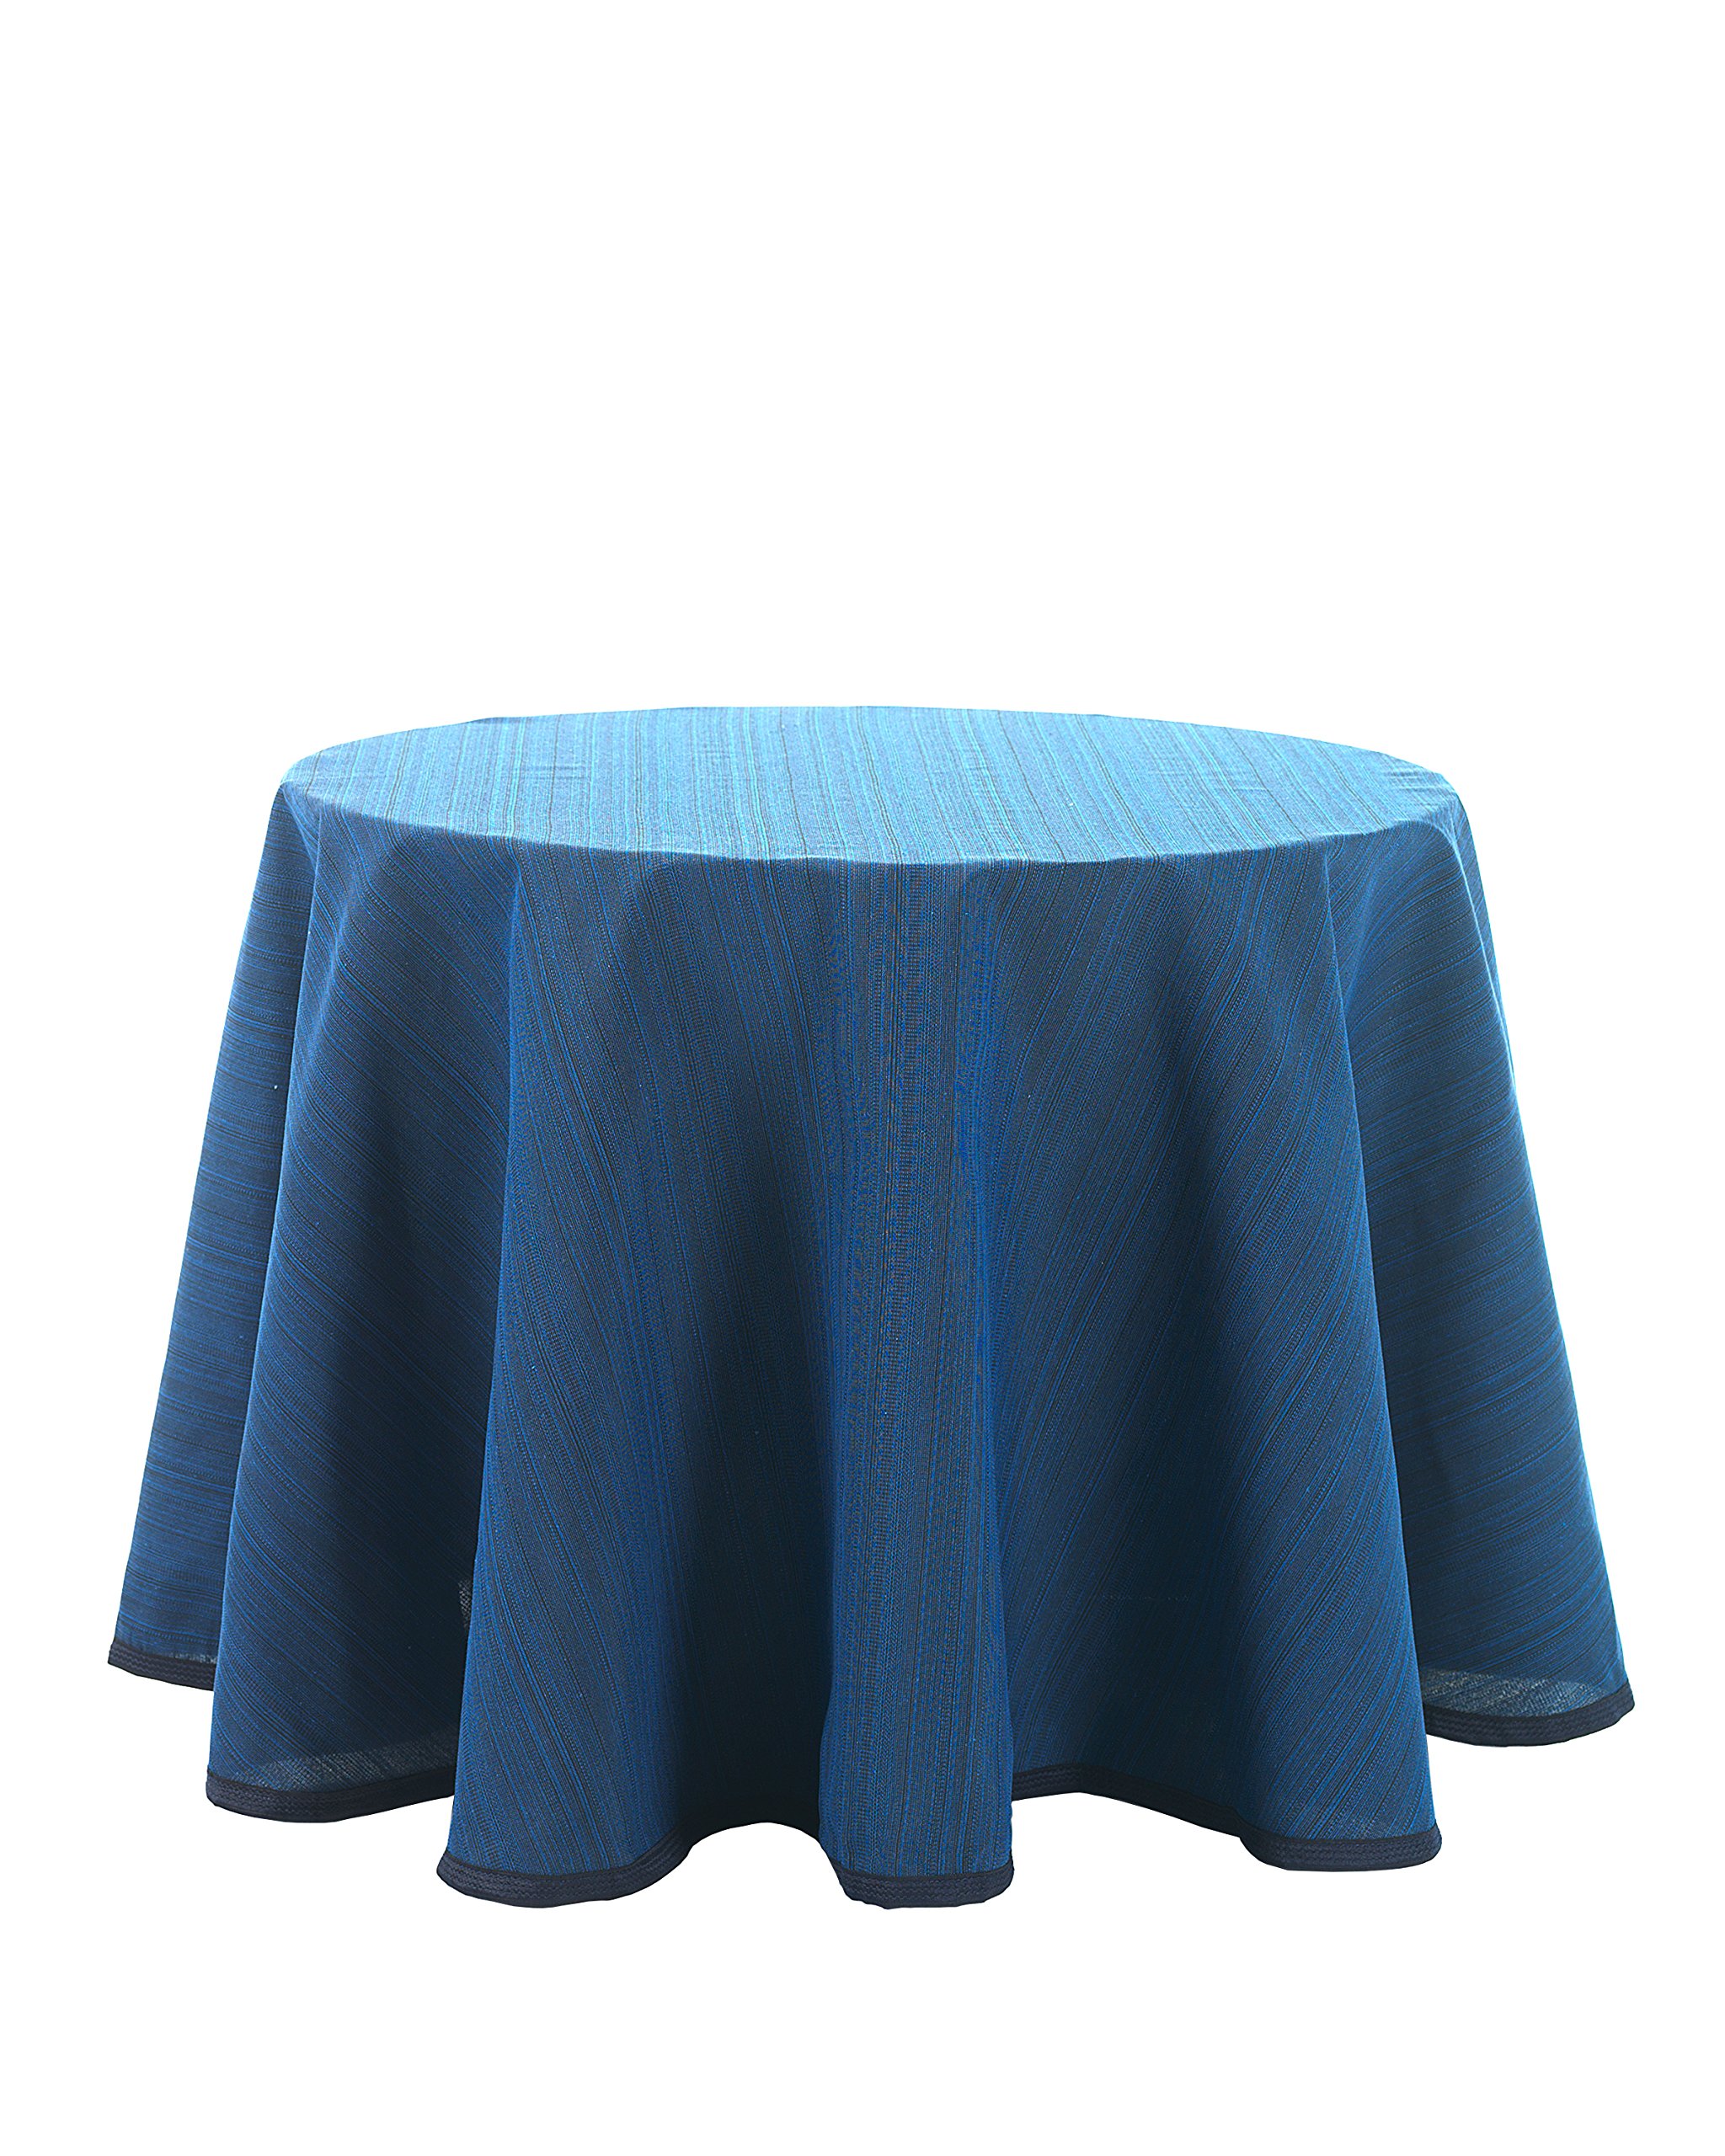 Martina Home Ribera Rock für Tisch Camilla 75x100x1 cm blau